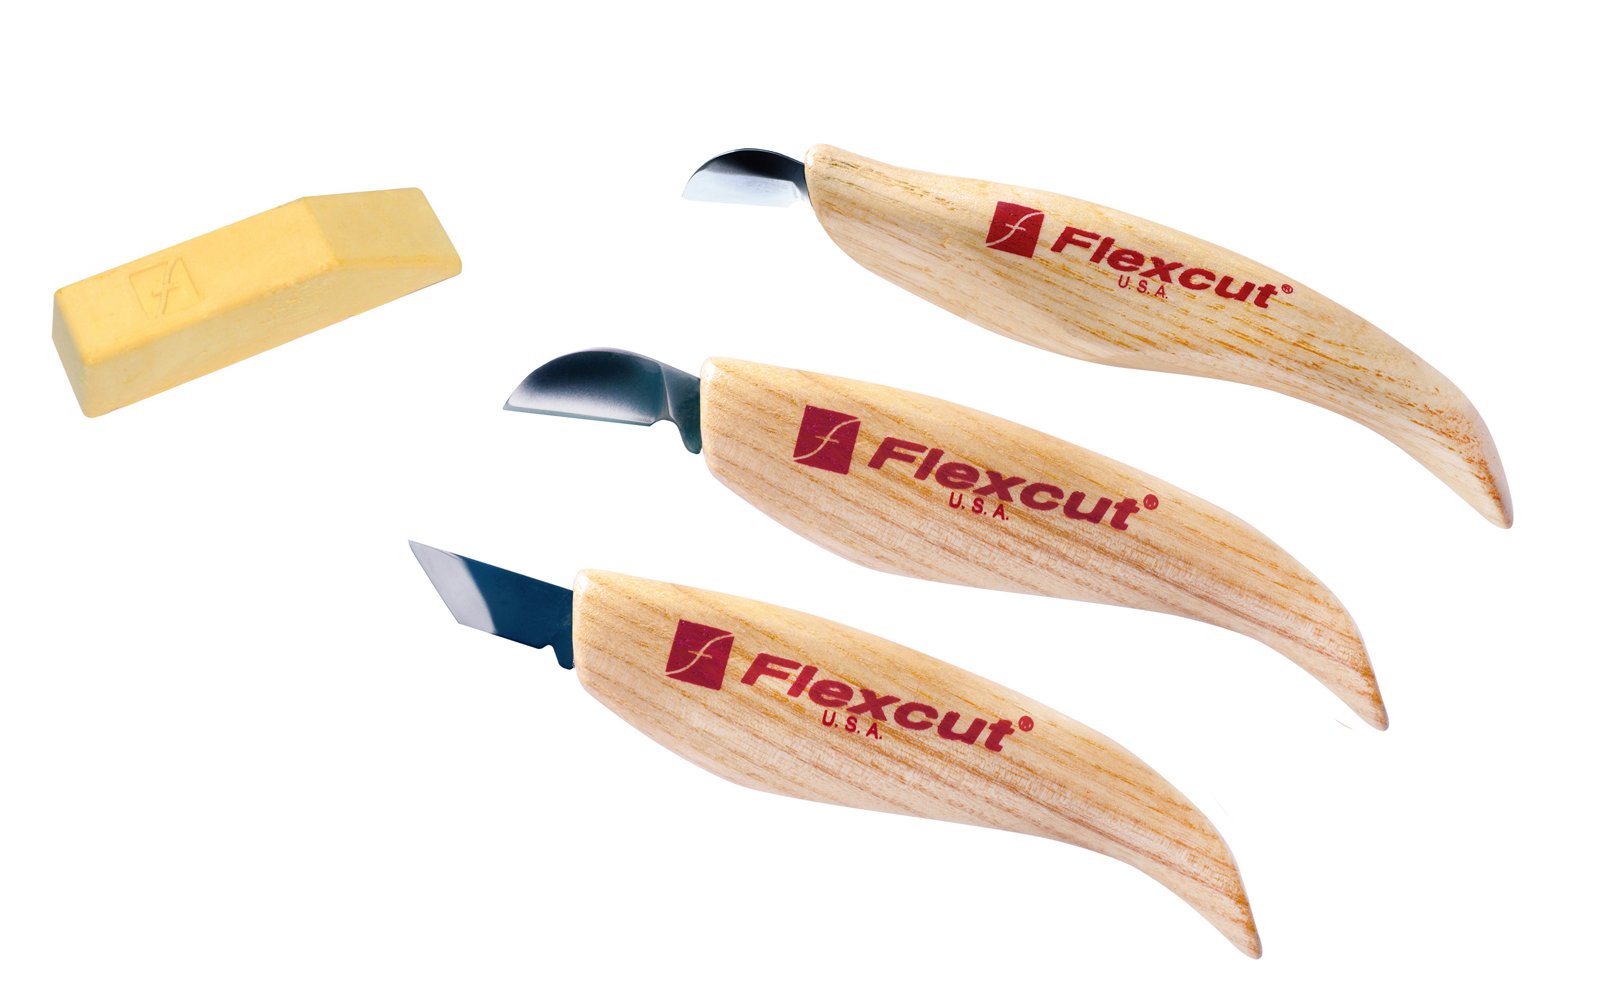 Flexcut KN115 3-Piece Chip Carving Set